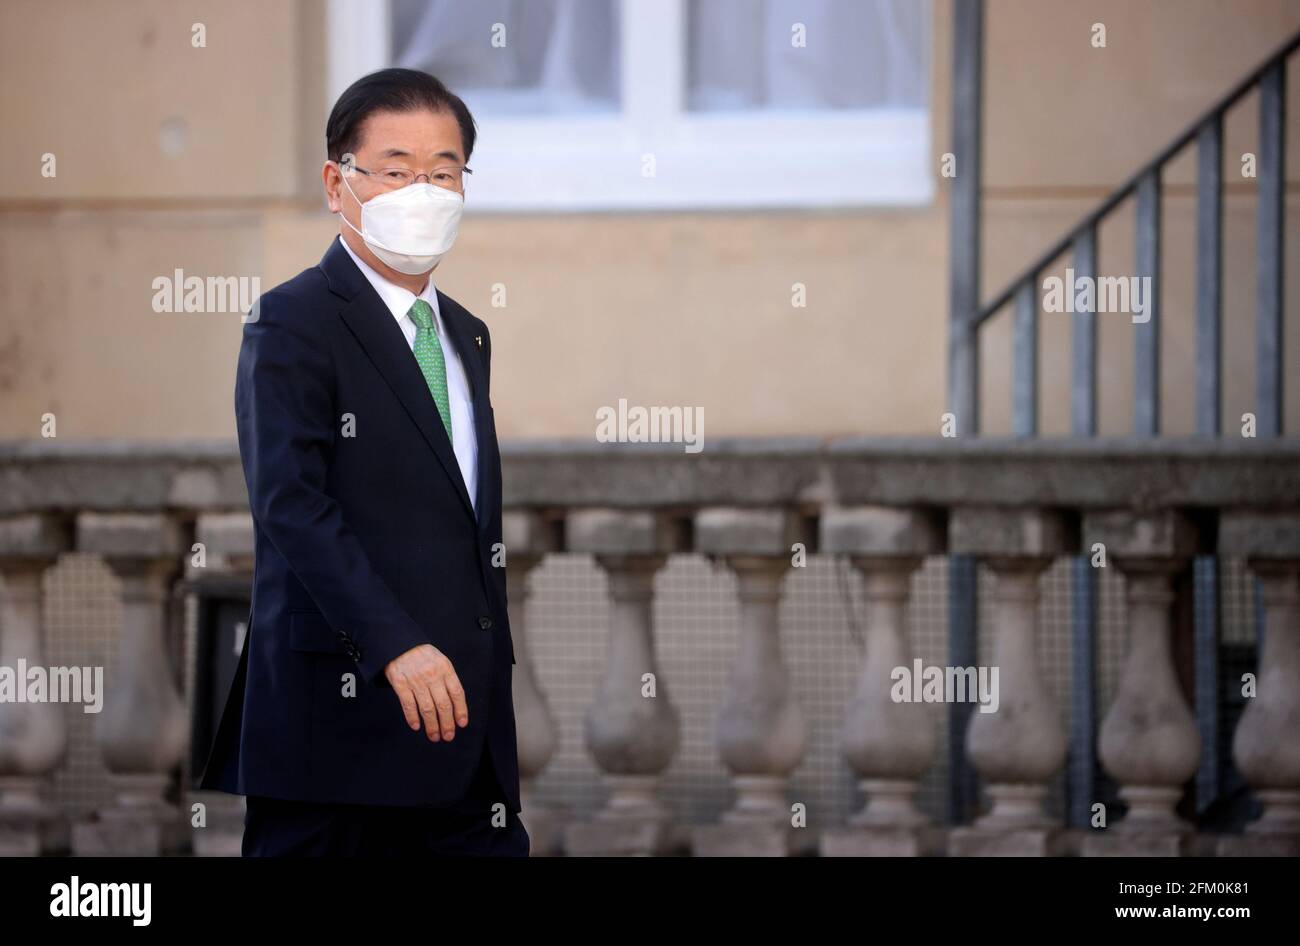 Chung EUI-yong, ministro degli Affari Esteri della Corea del Sud, arriva a Lancaster House, Londra, durante la riunione dei ministri degli Esteri e dello sviluppo del G7. Data immagine: Mercoledì 5 maggio 2021. Foto Stock